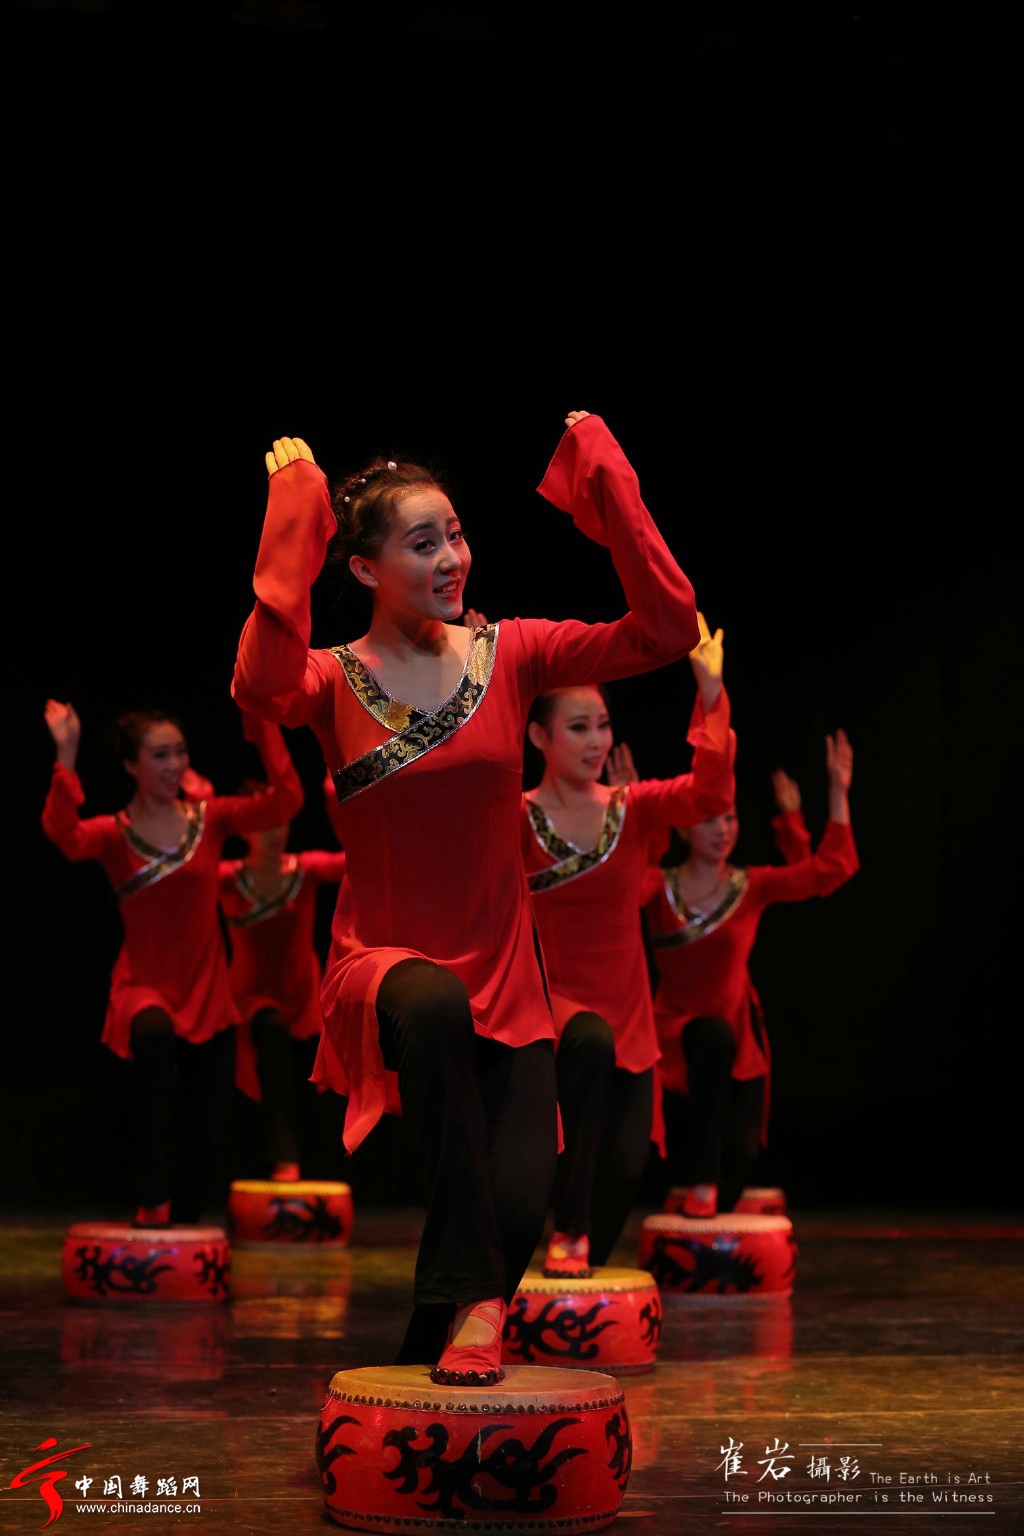 天津音乐学院舞蹈系2011级毕业晚会 舞蹈 相和歌04.jpg